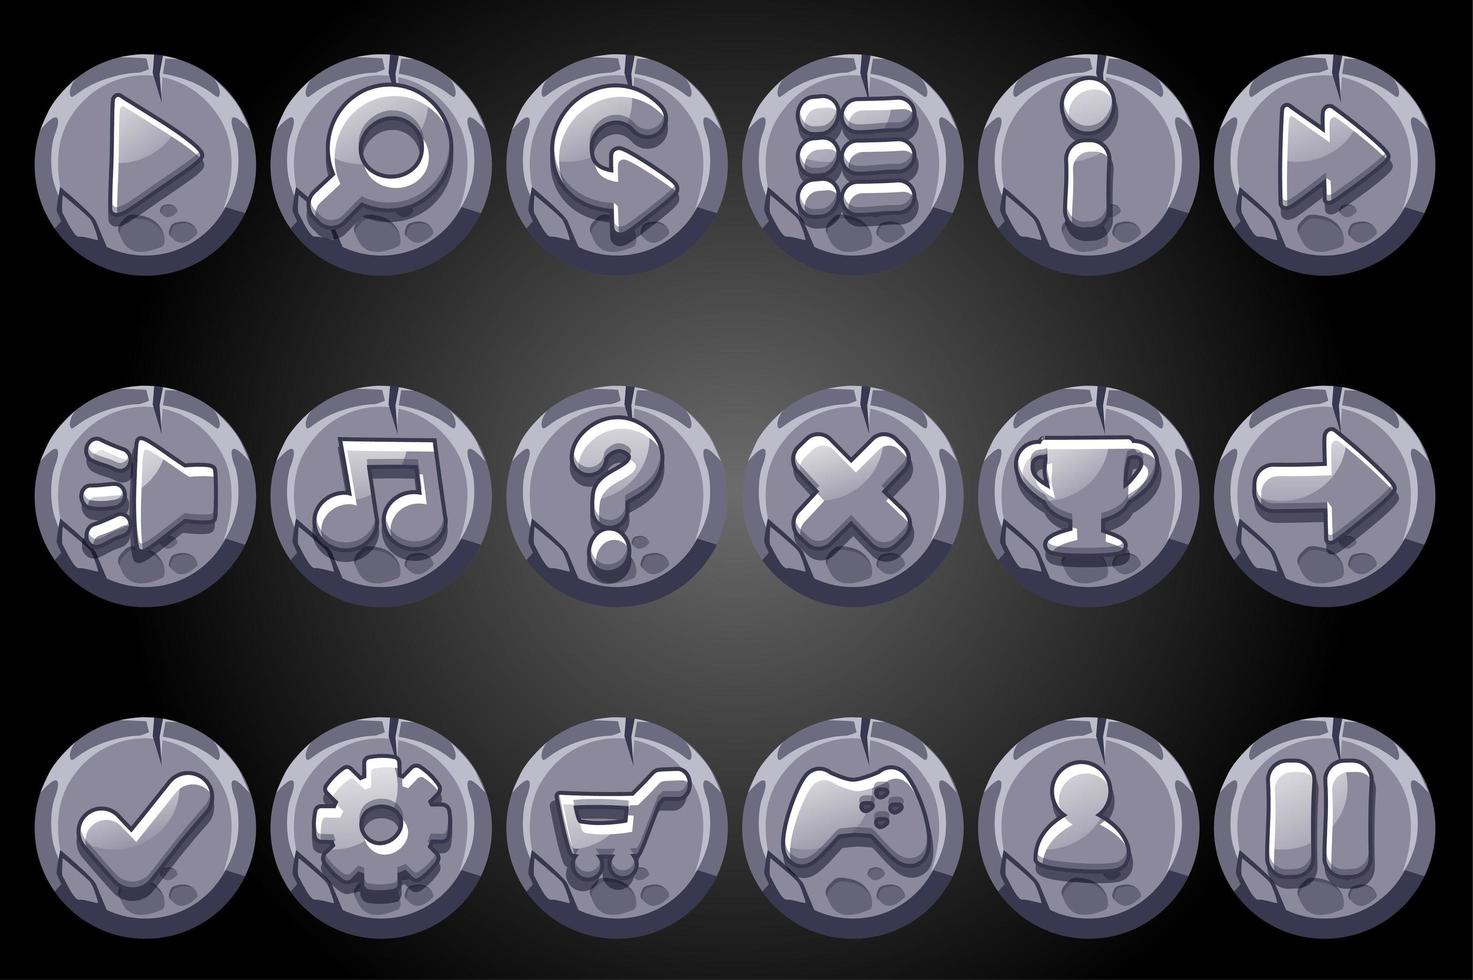 Botones redondos de piedra antigua para la interfaz gráfica de usuario del juego. vector